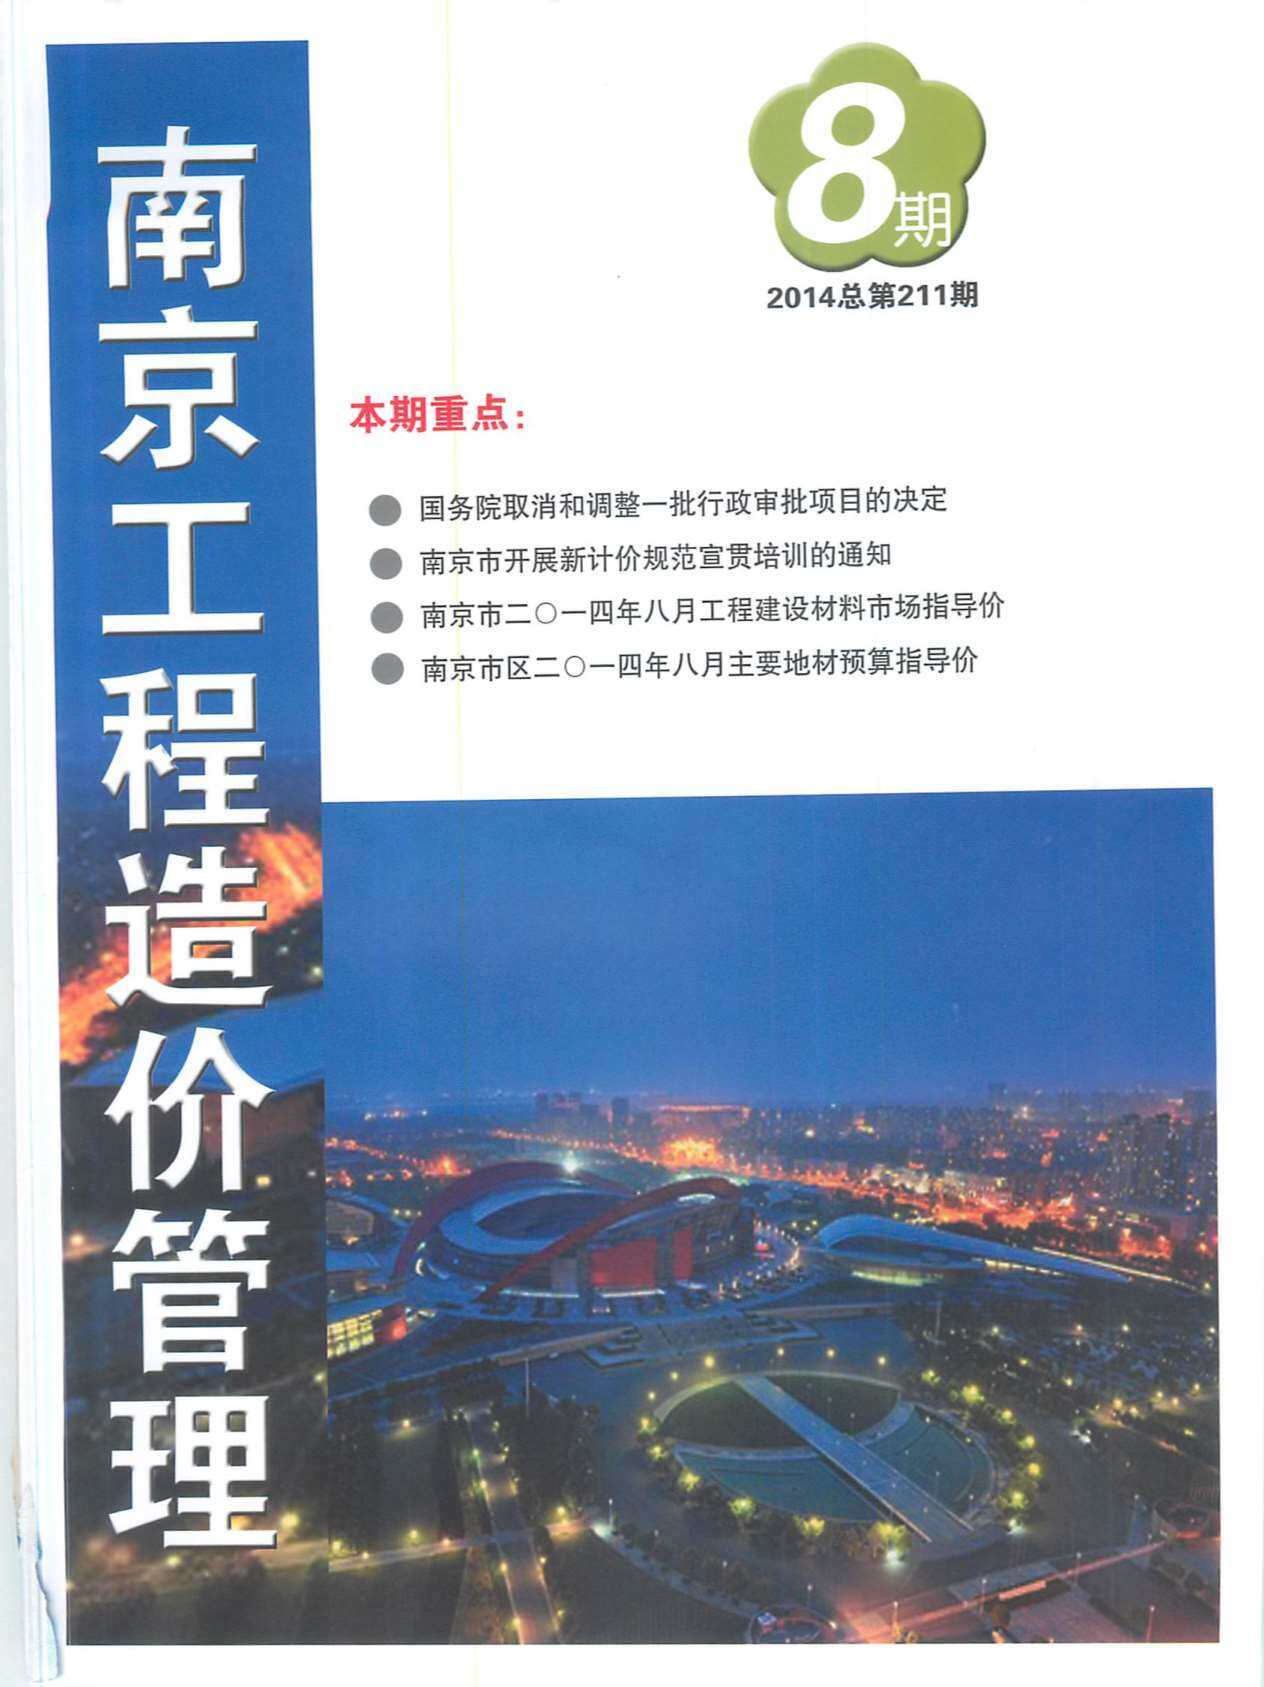 南京市2014年8月工程造价信息期刊